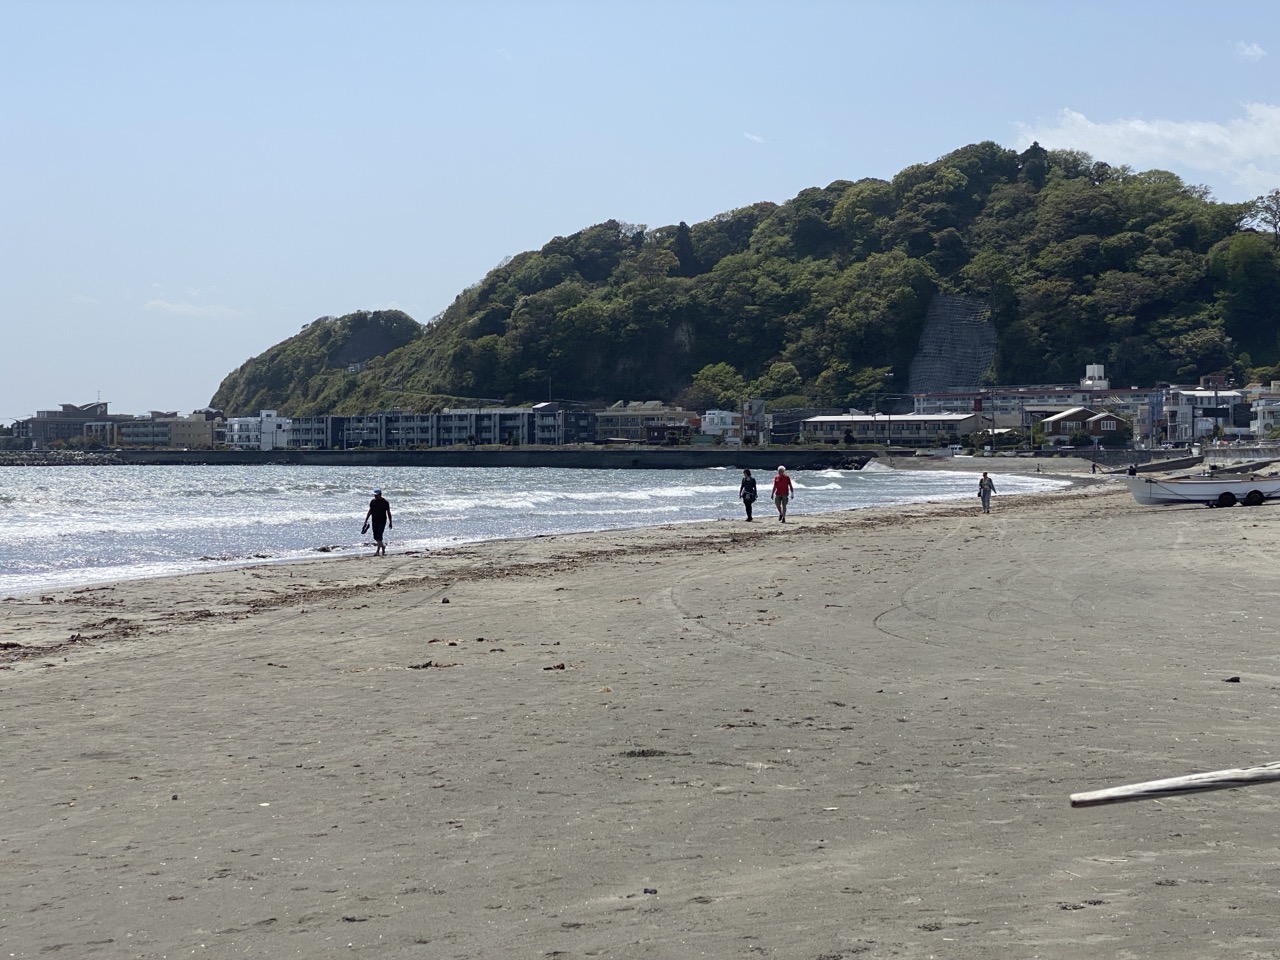 The beach at Kamakura